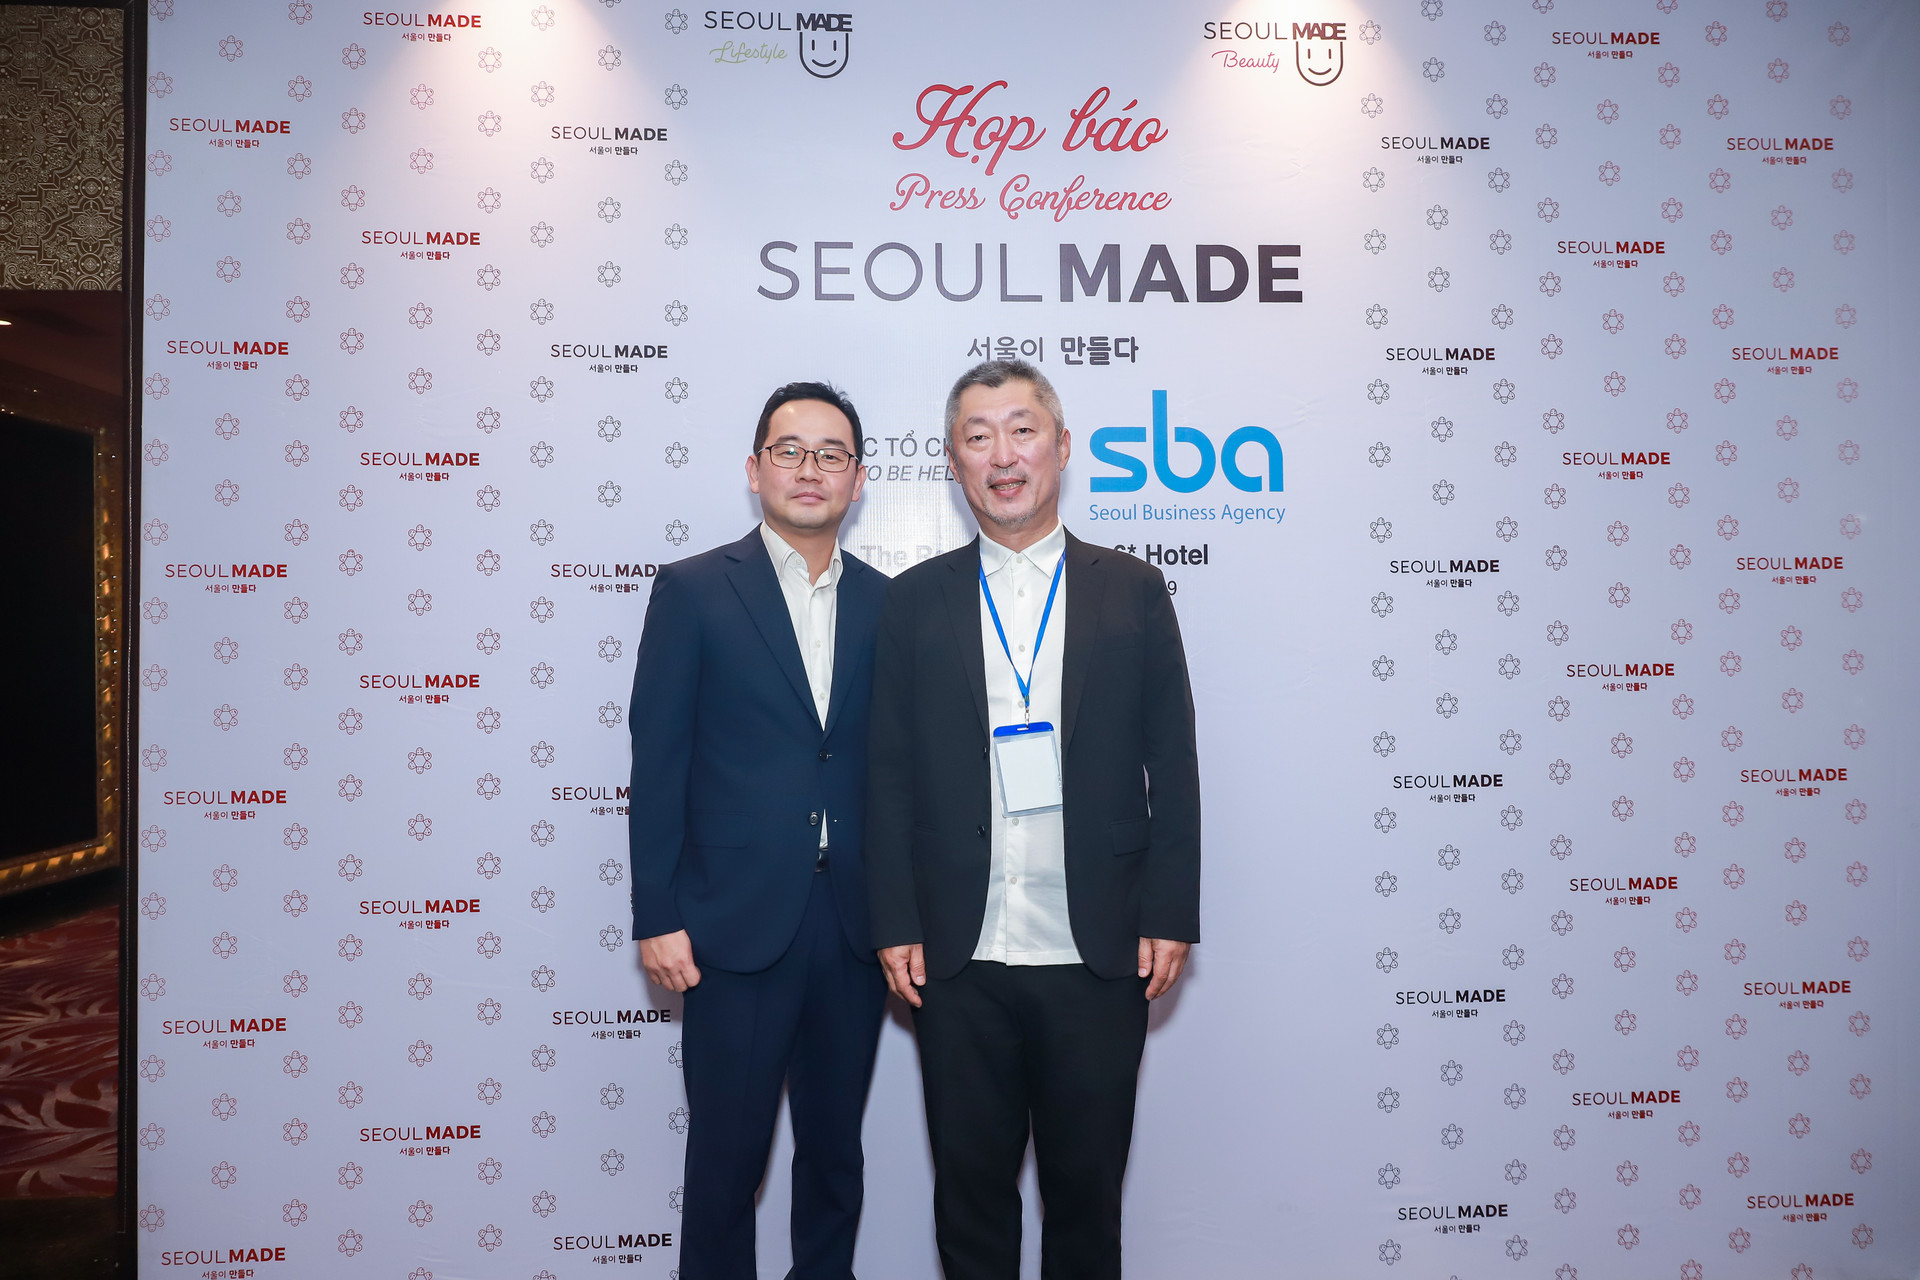 Ra mắt các sản phẩm Seoul Made tại Việt Nam